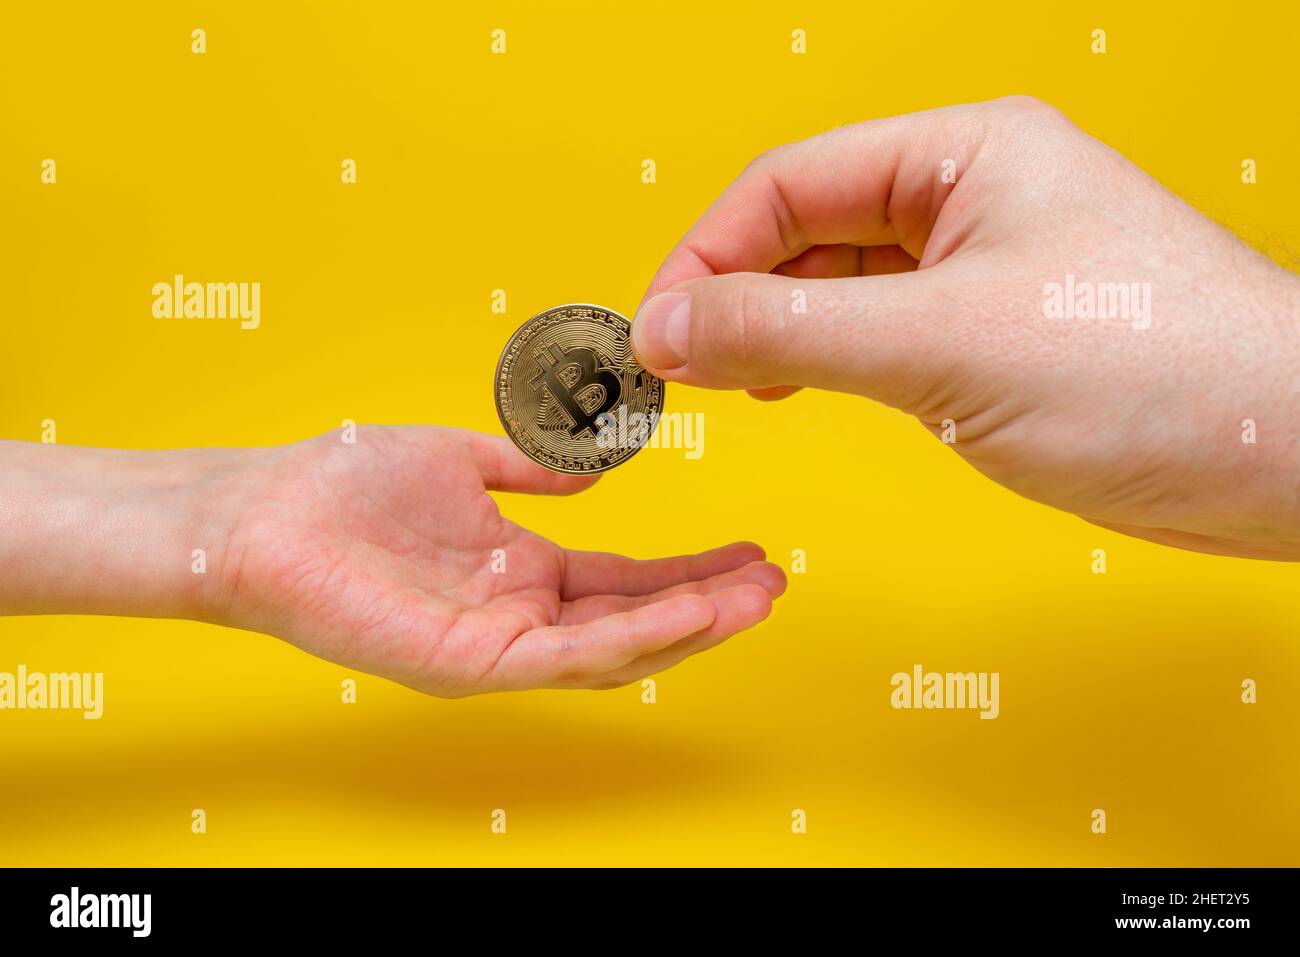 La mano de un adulto pasa un bitcoin dorado a la mano de un niño. El futuro del bitcoin, la inversión en criptomonedas. Bitcoin moneda en la mano del niño Foto de stock